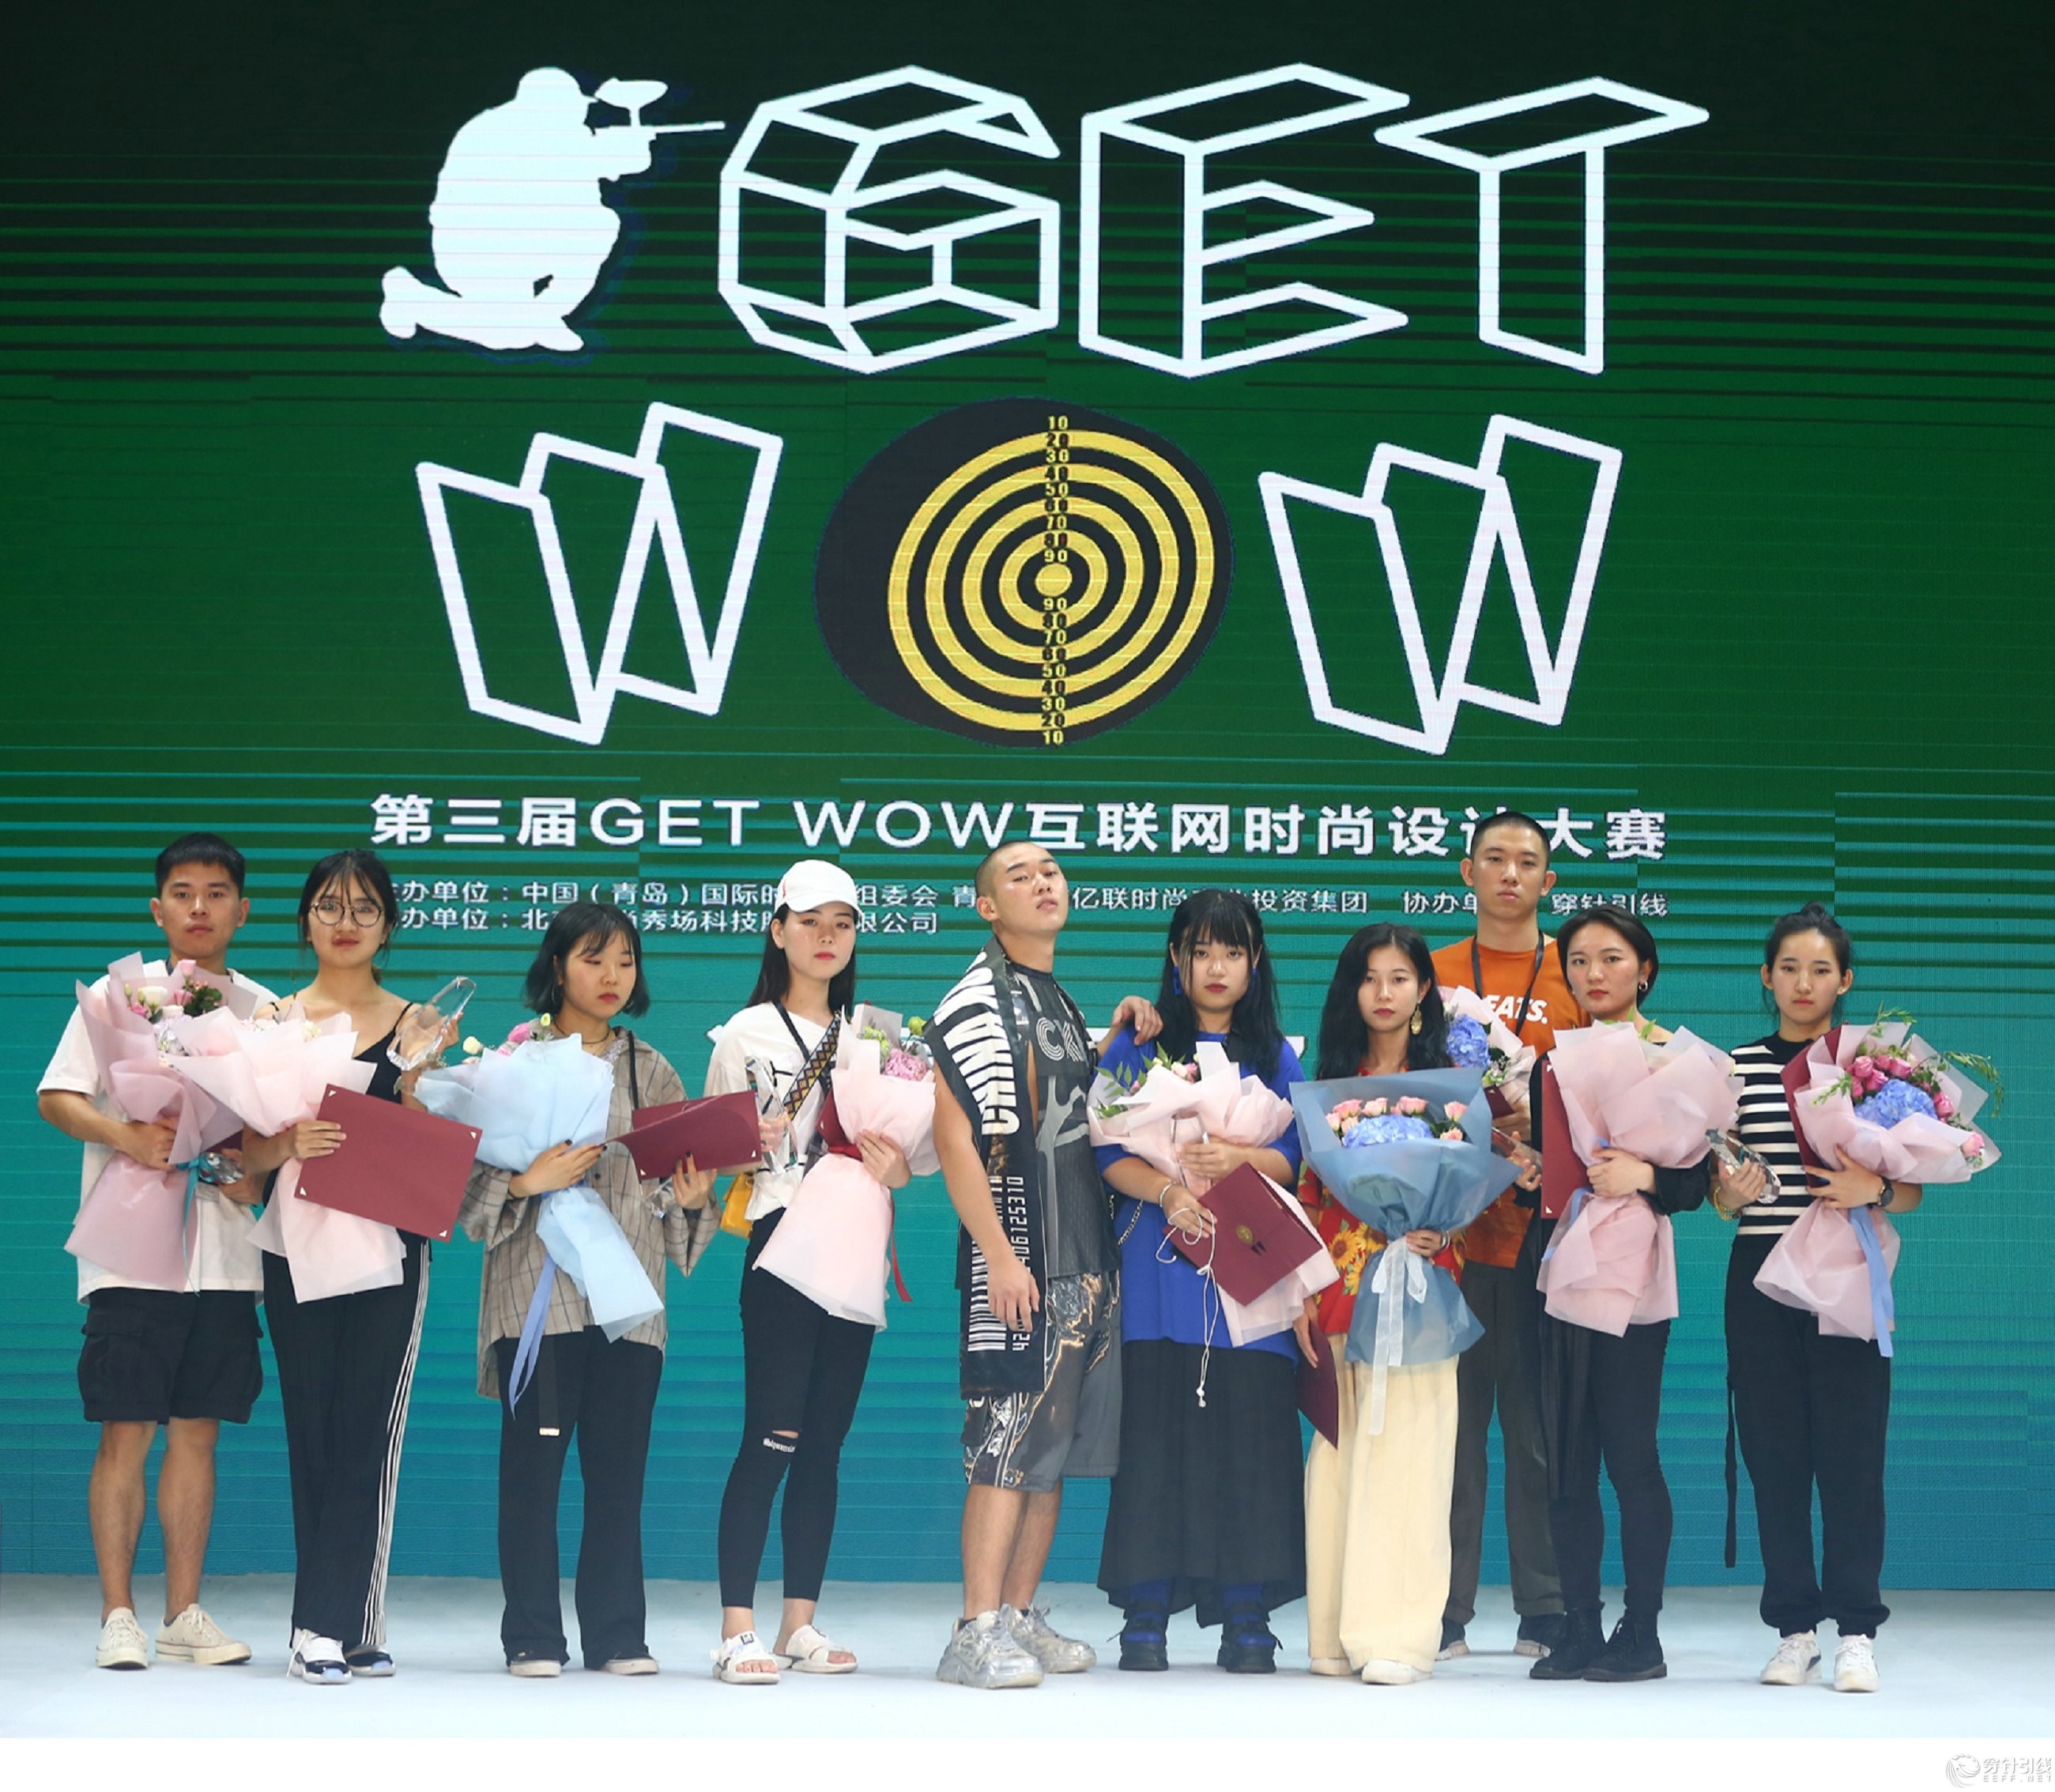 第四届GET WOW互联网时尚设计大赛正式启动